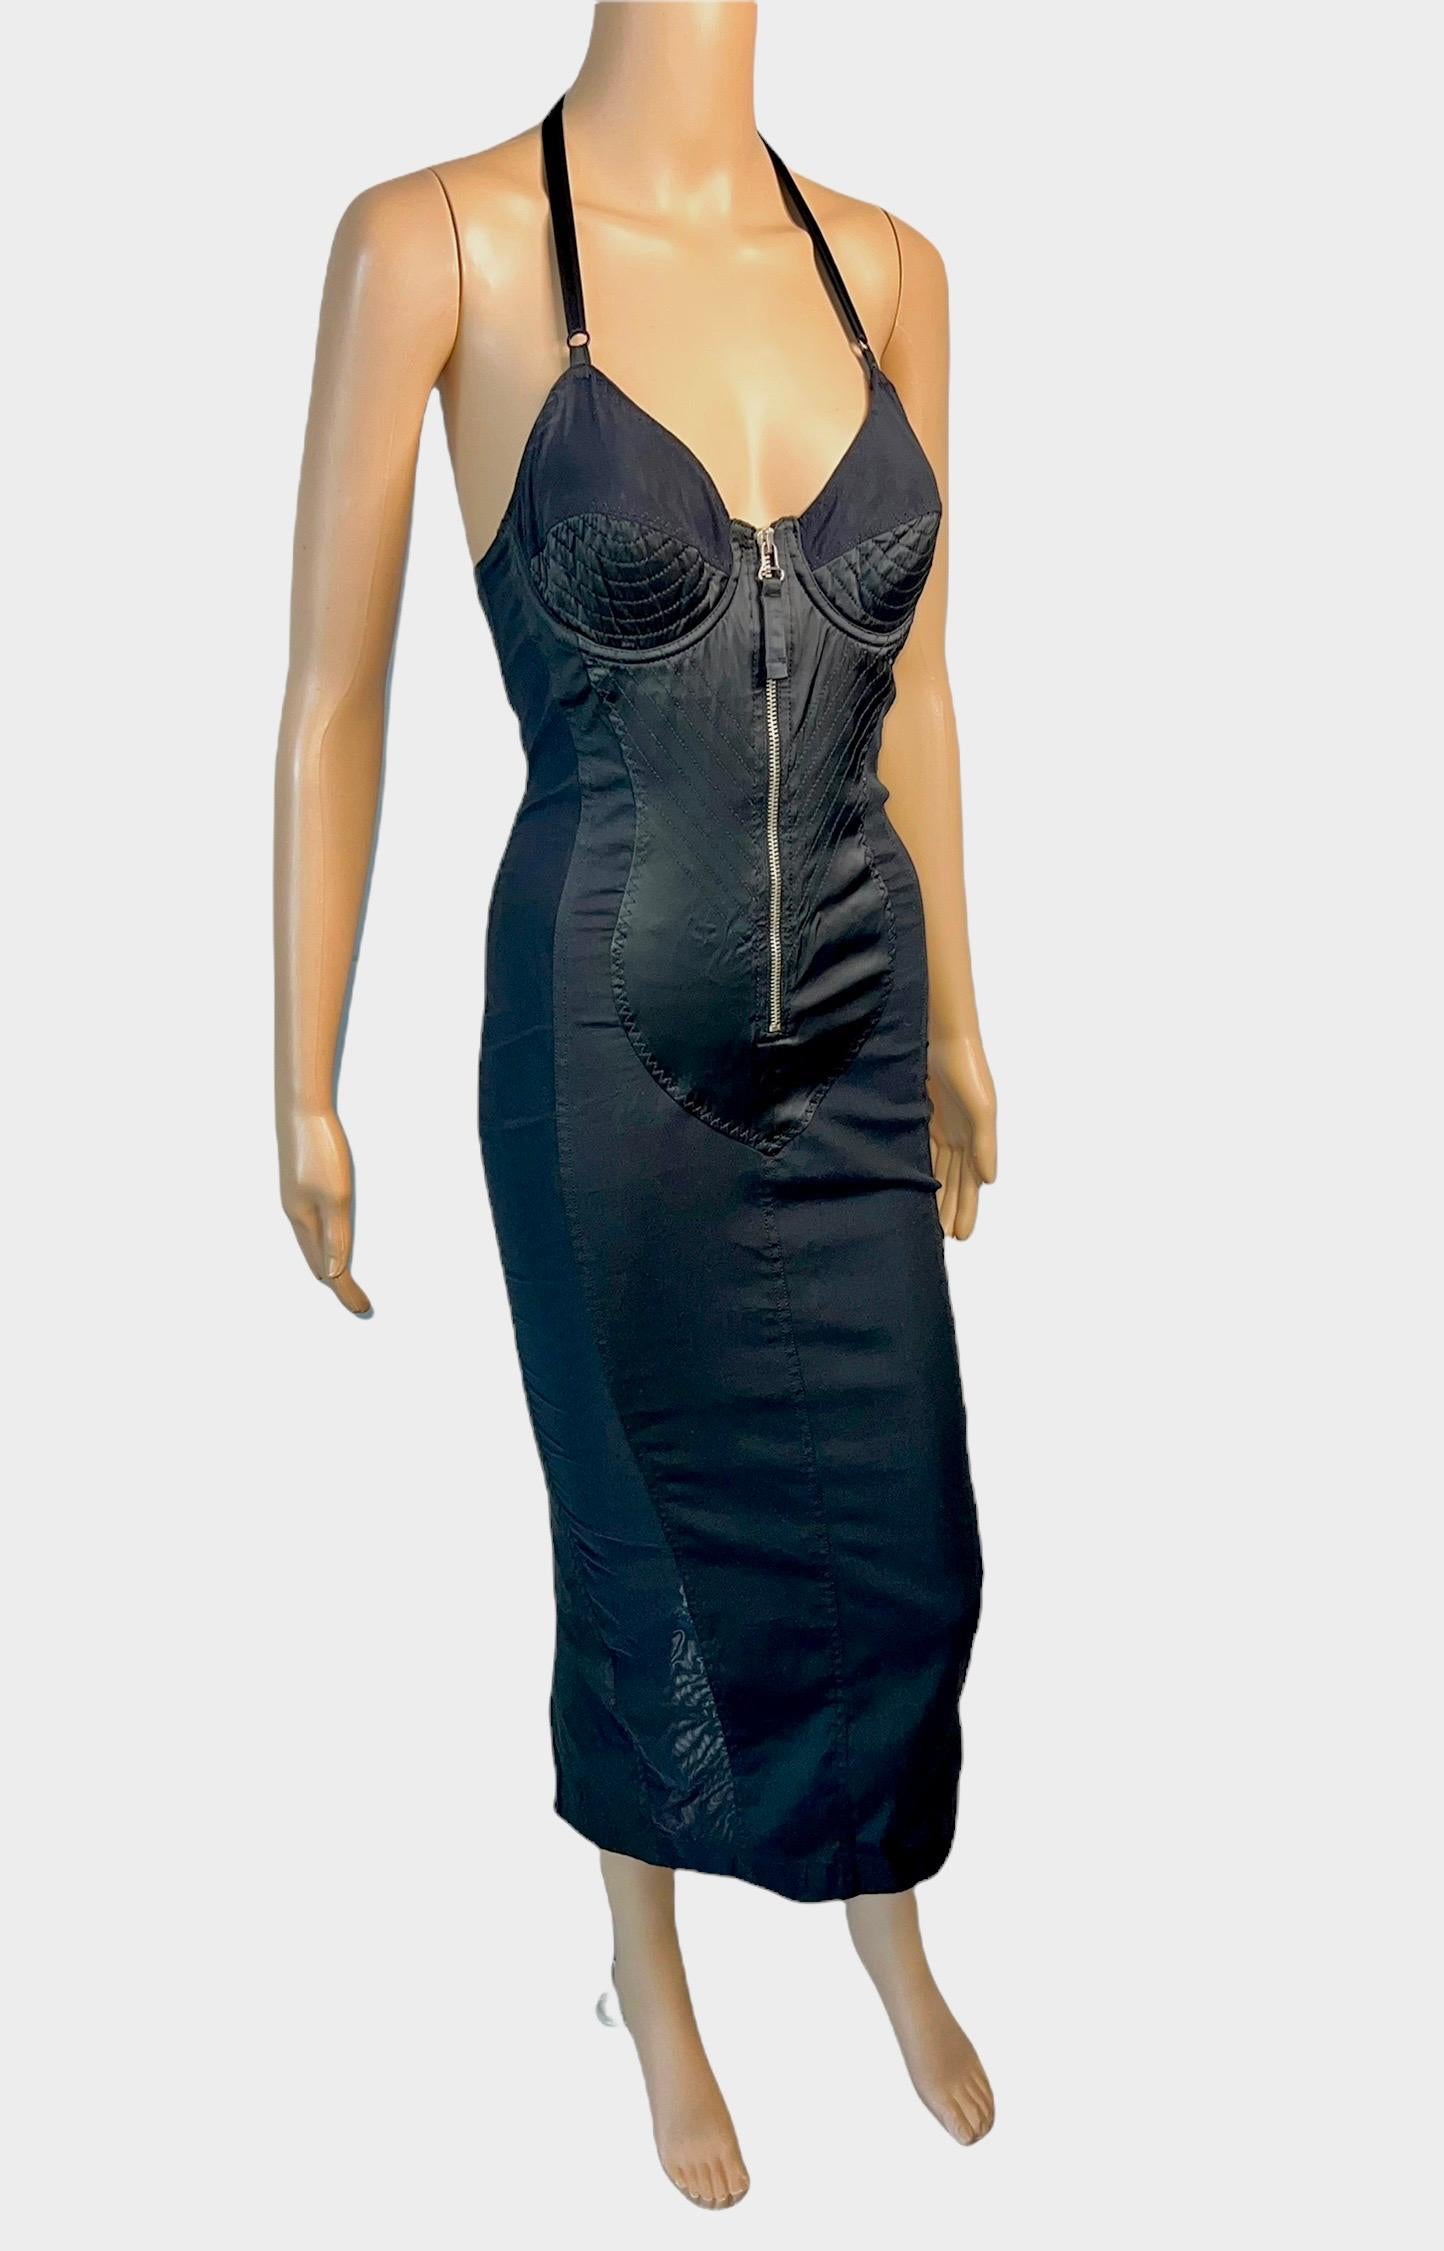 Jean Paul Gaultier Classique 1990's Vintage Cone Bra Corset Bondage Semi-Sheer Panels Black Evening Dress Size IT 40